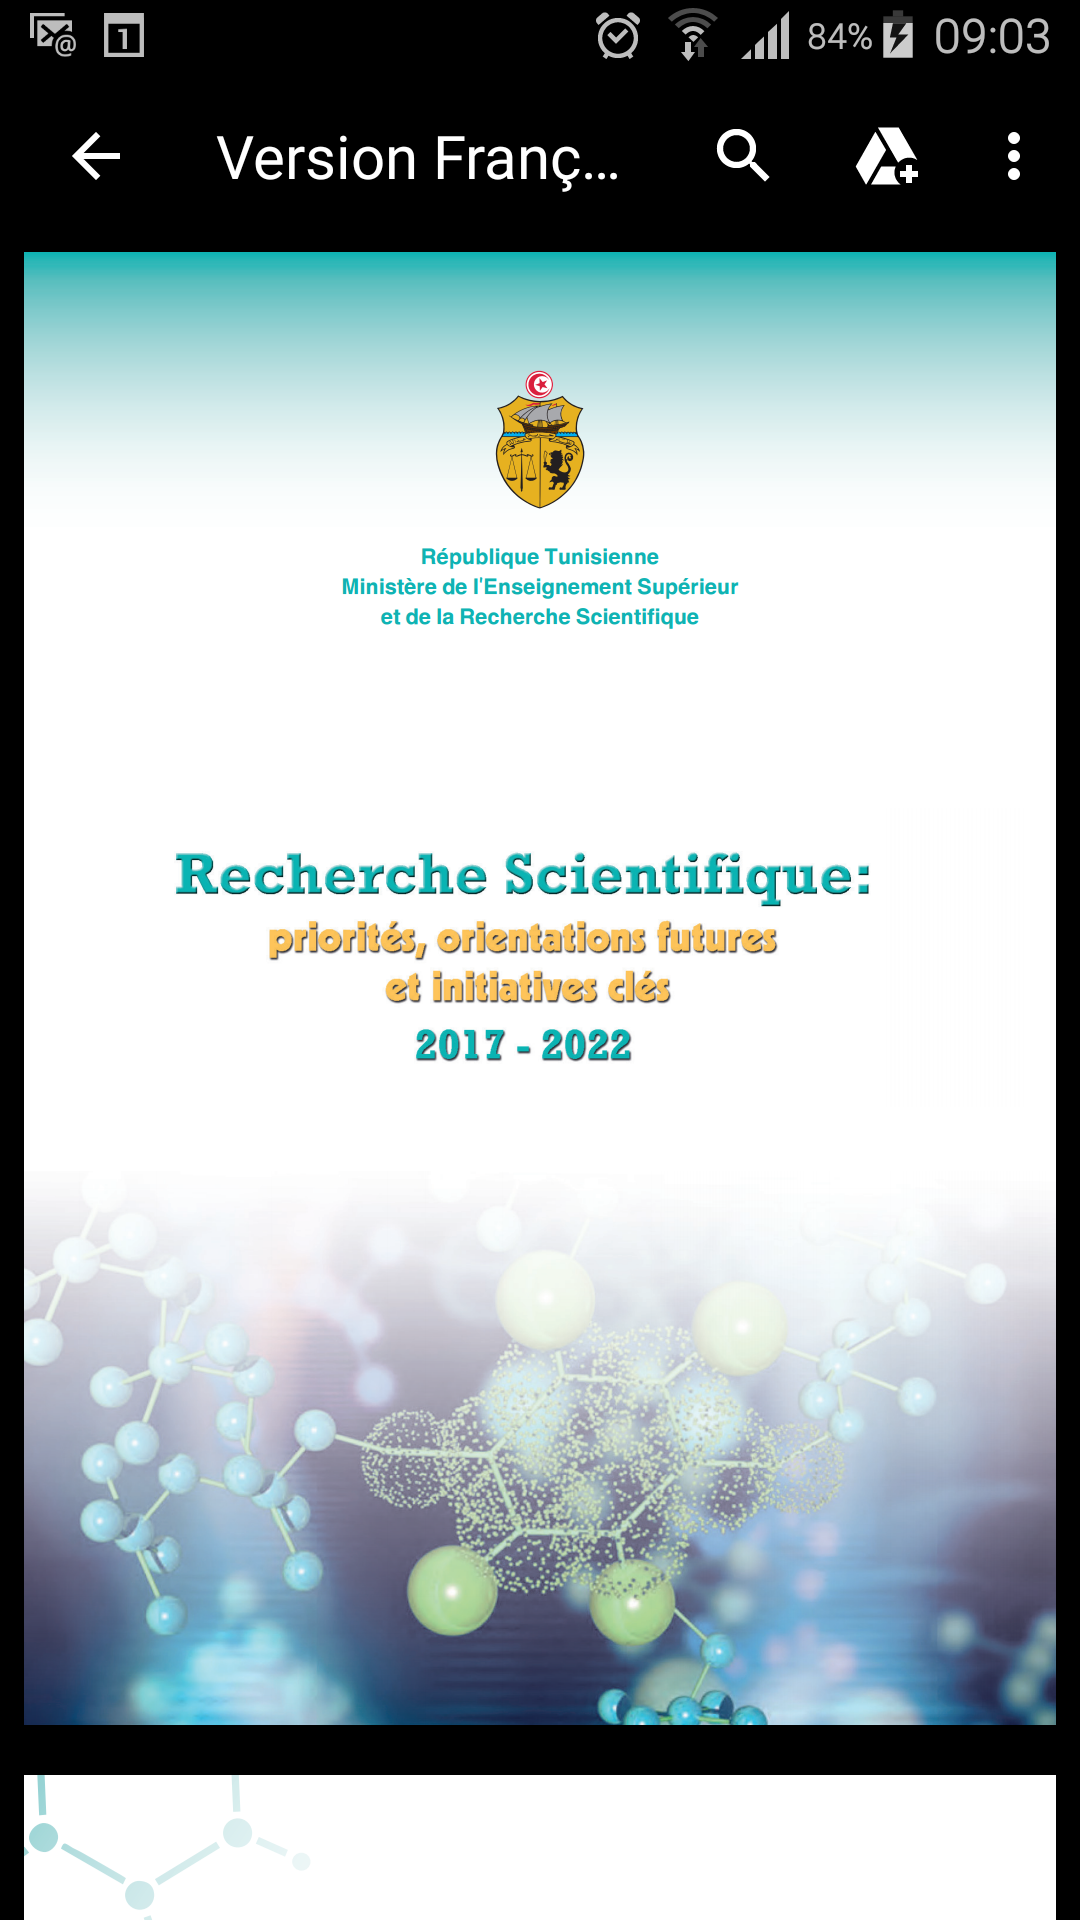 Recherche Scientifique: Priorités et orientations futures